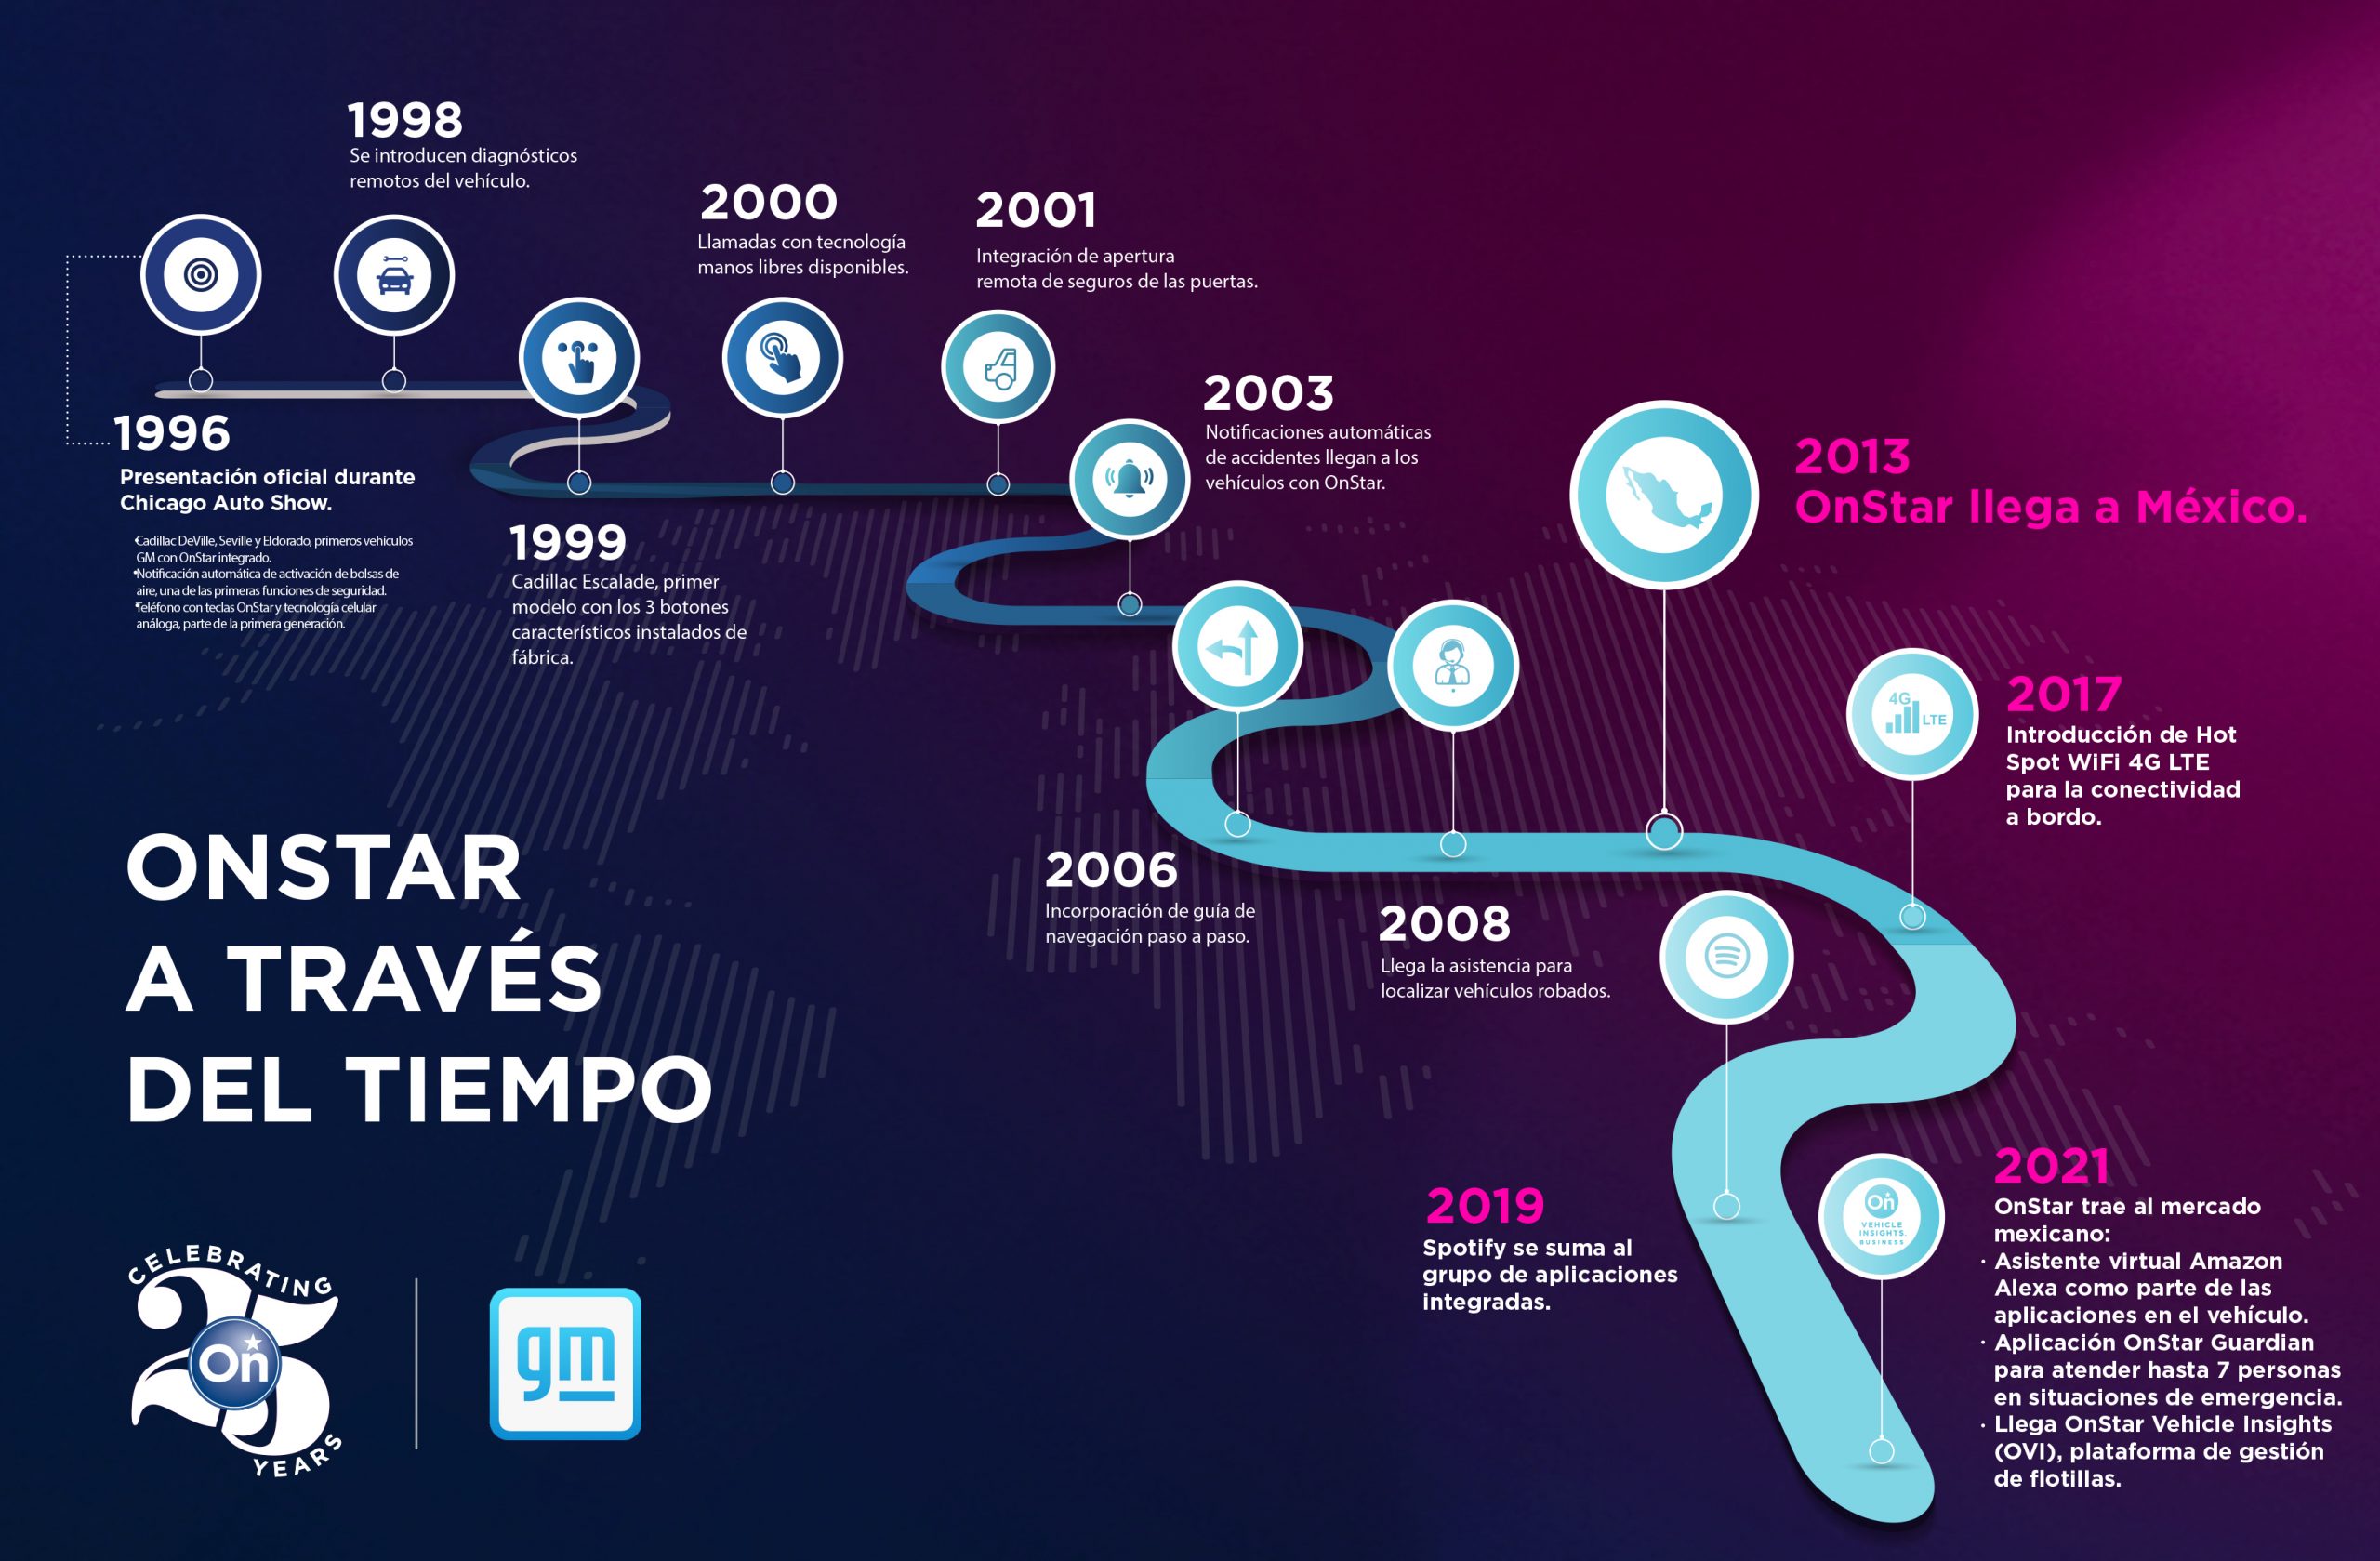 OnStar Global celebra su 25° Aniversario con 22 millones de vehículos conectados